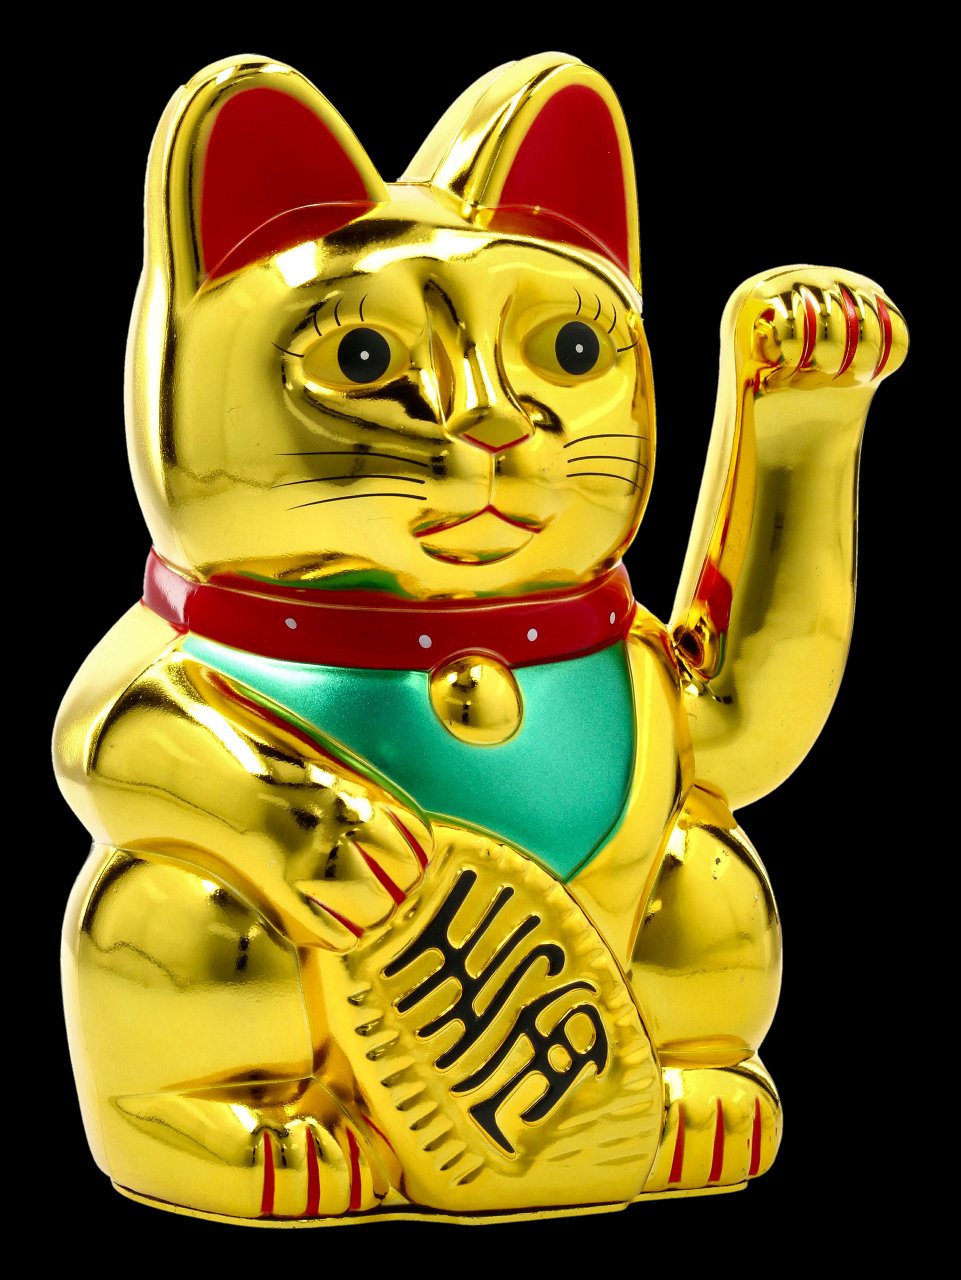 Winkende Glücks-Katzen Figur - Maneki Neko